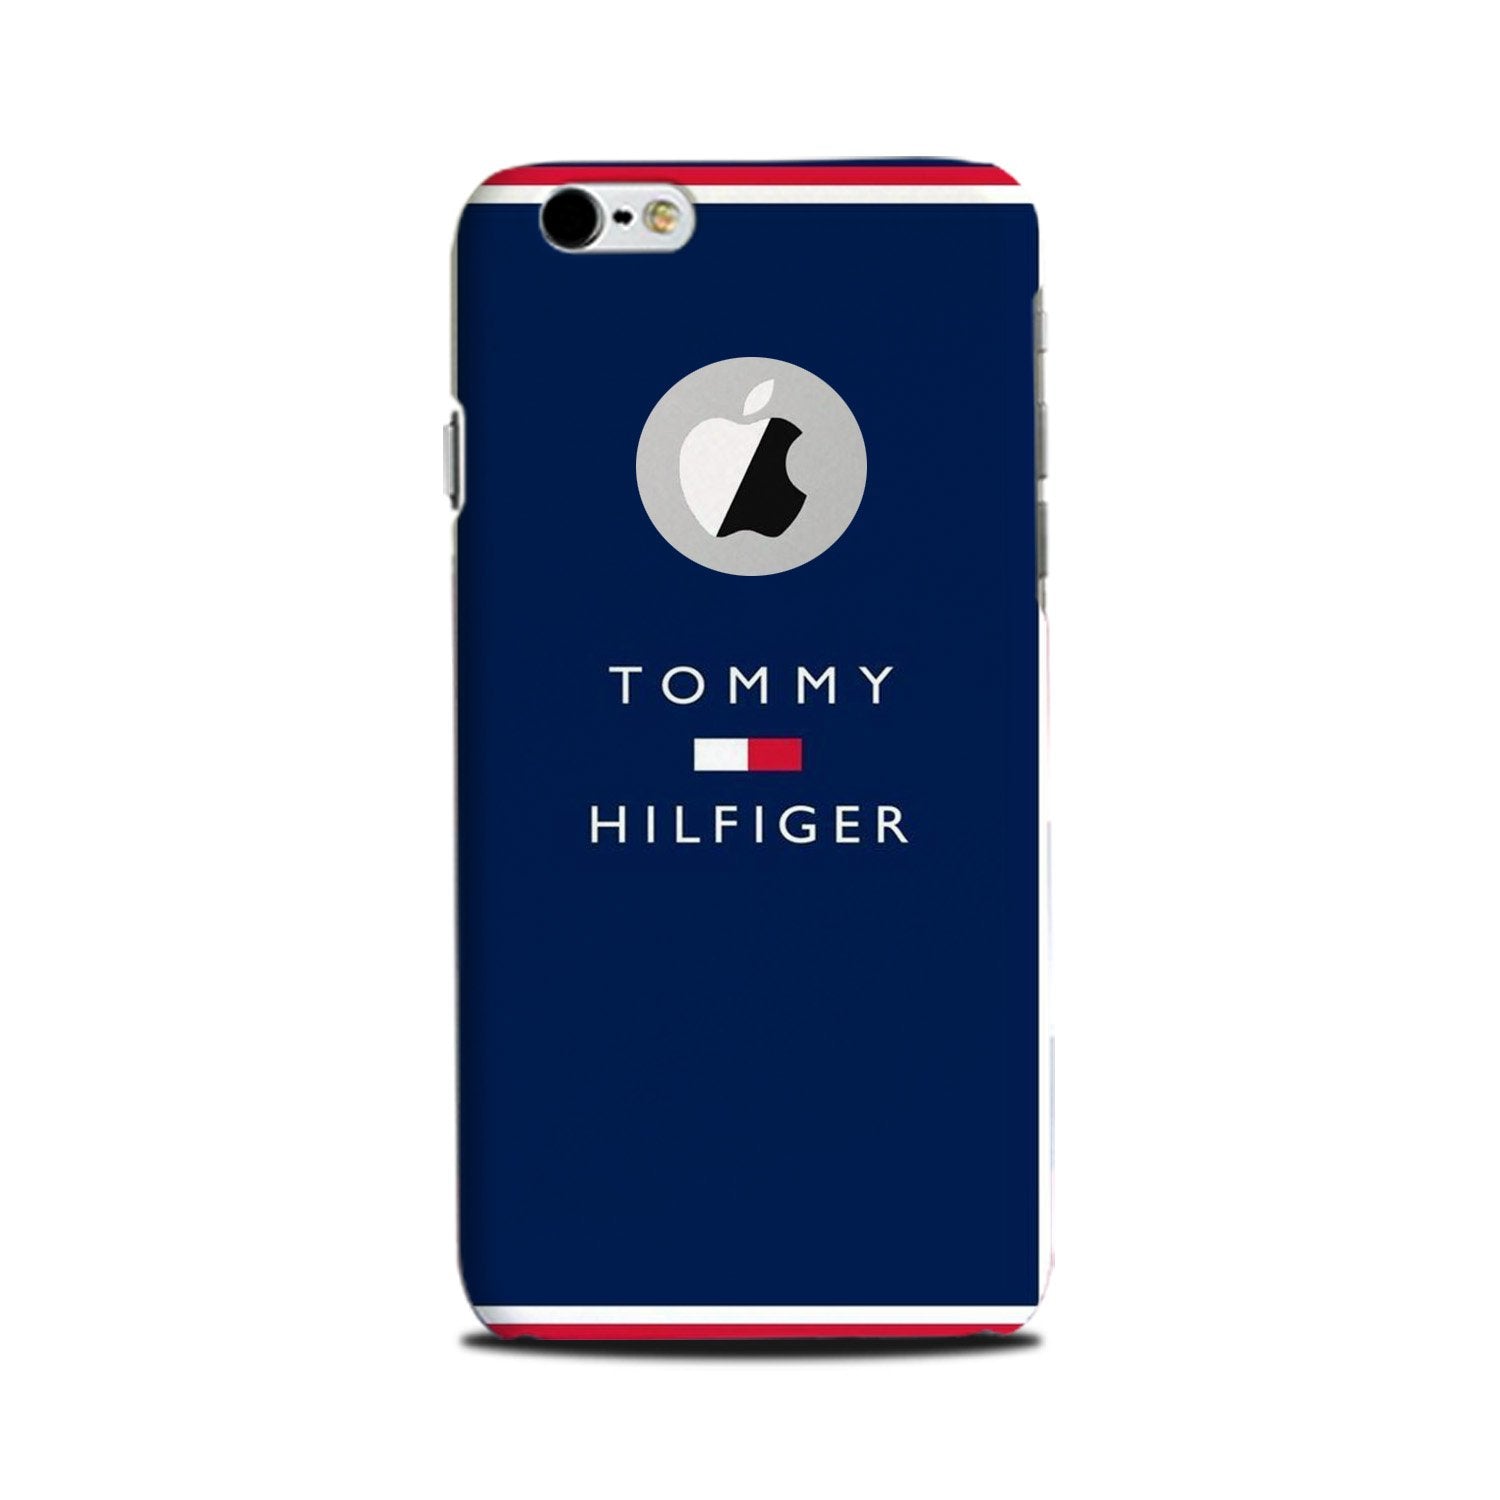 Tommy Hilfiger Case for iPhone 6 Plus / 6s Plus logo cut  (Design No. 275)